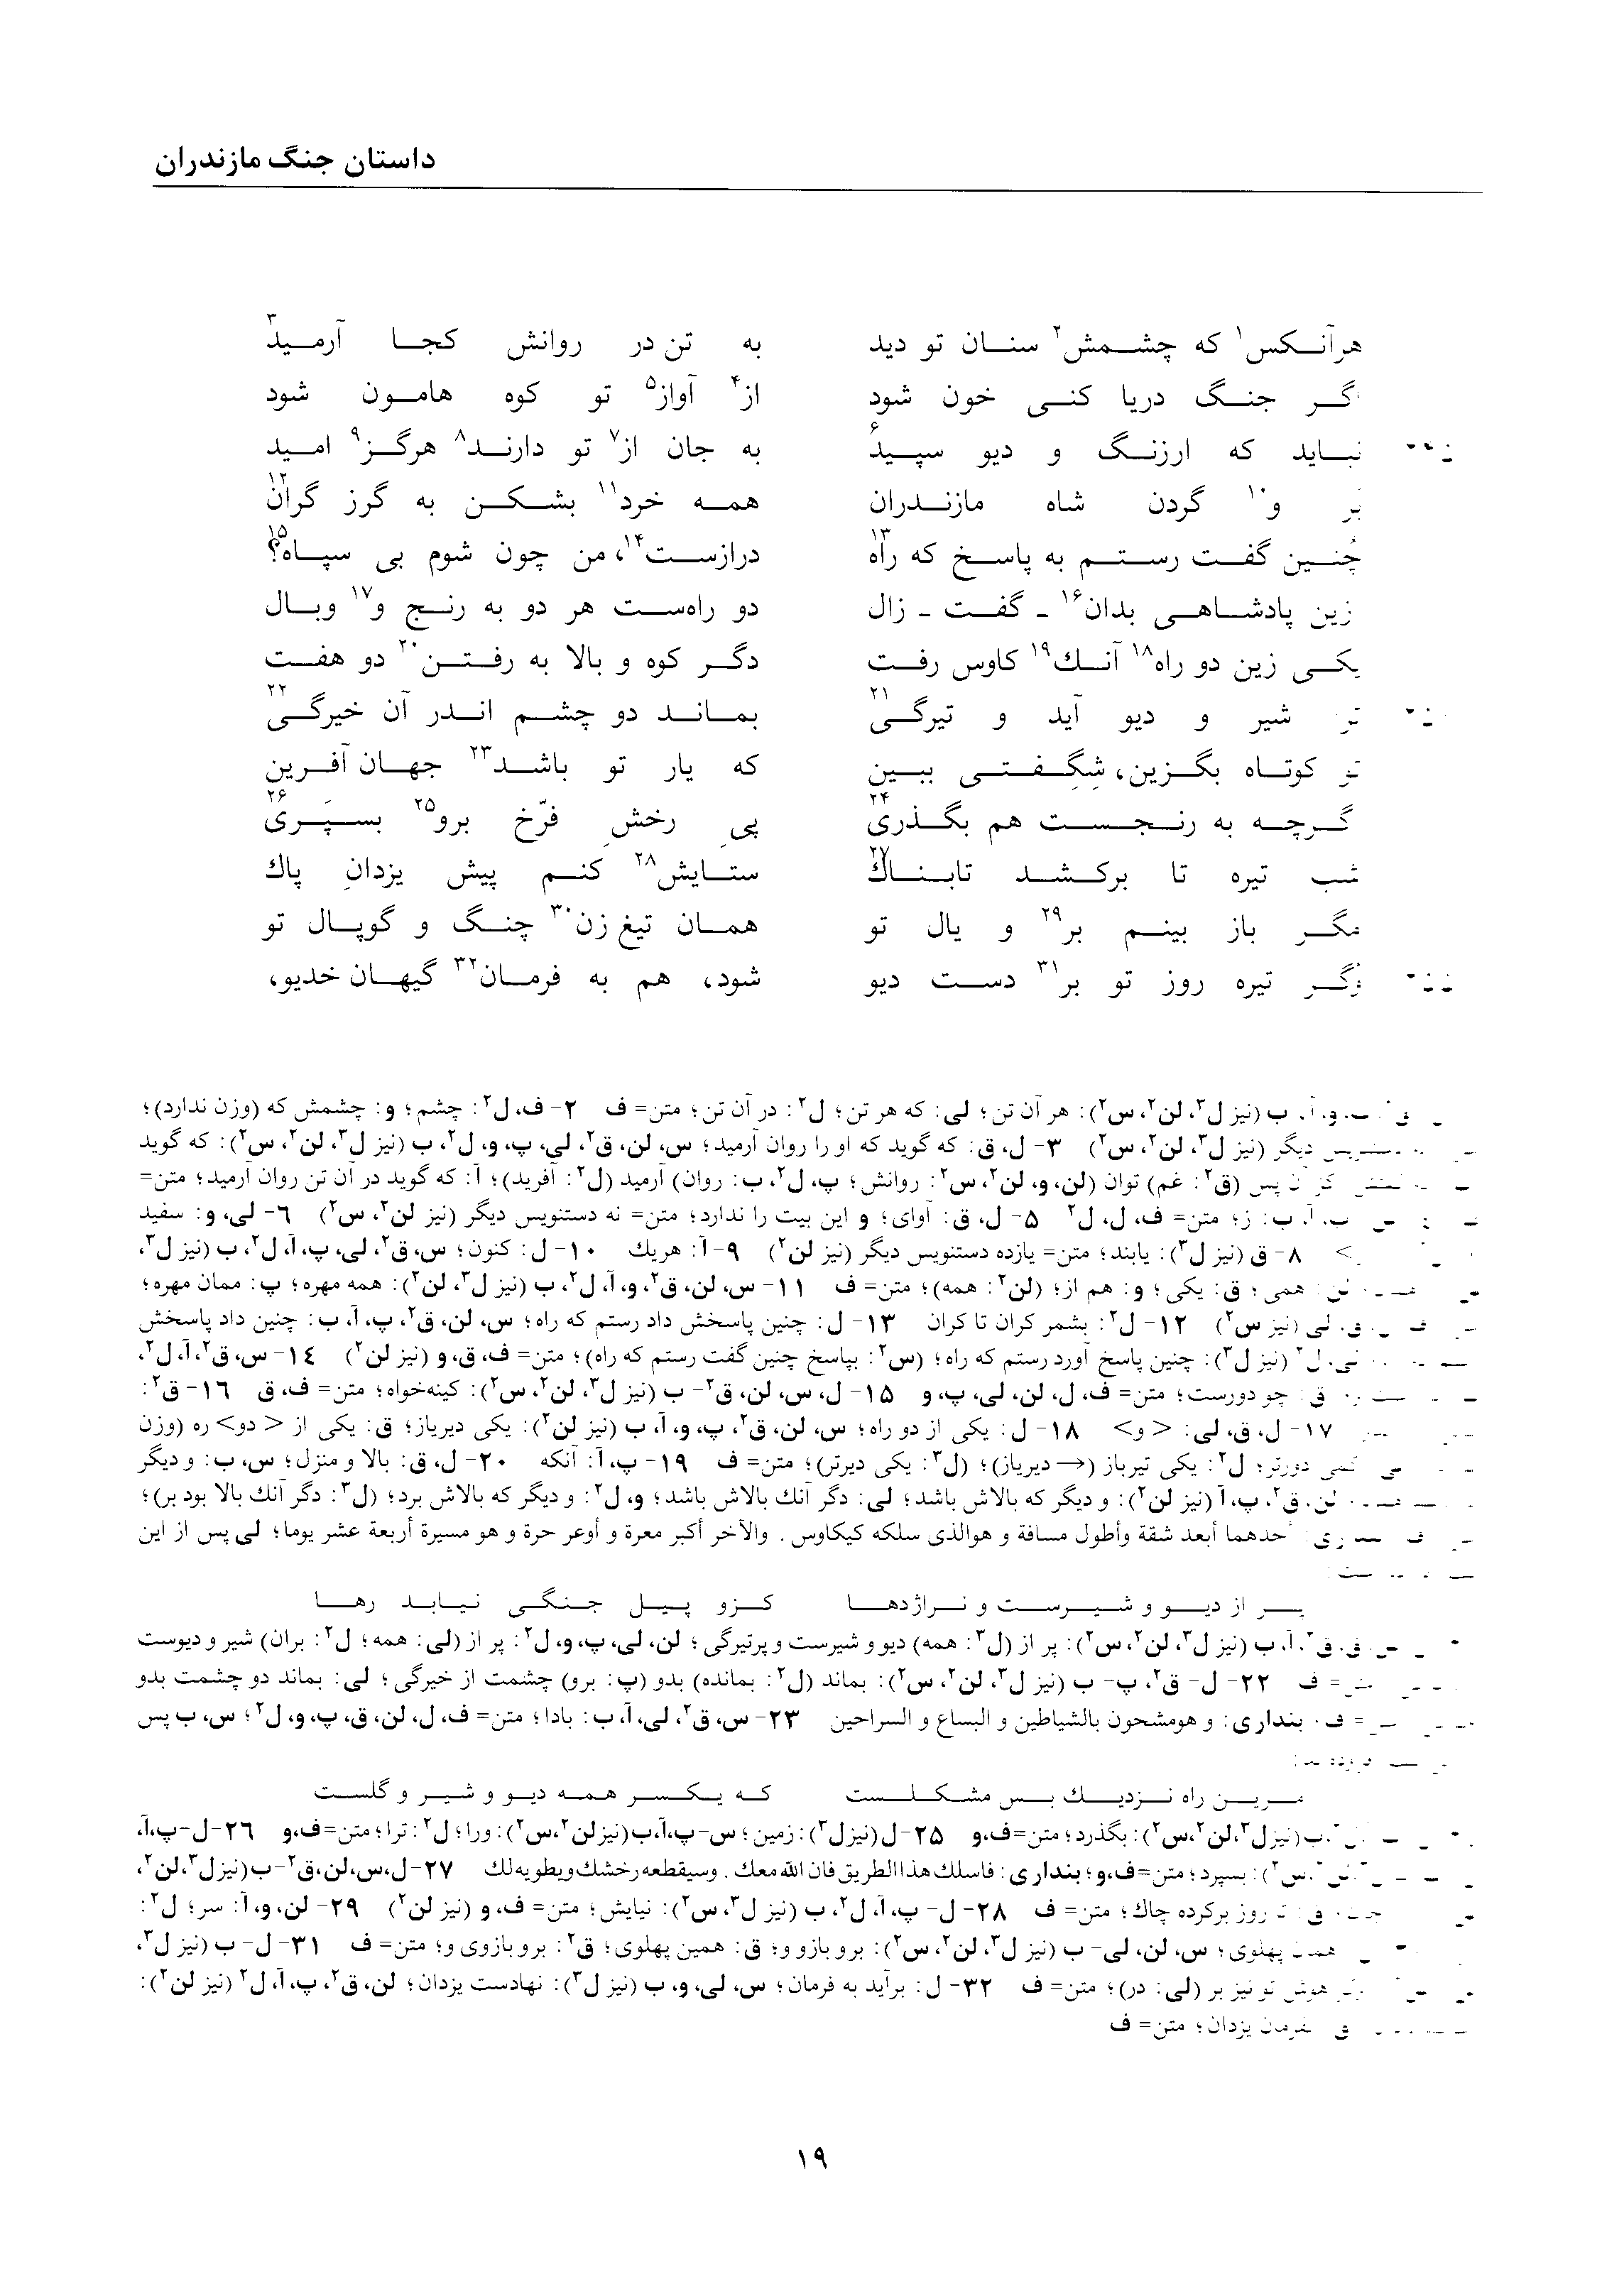 vol. 2, p. 19